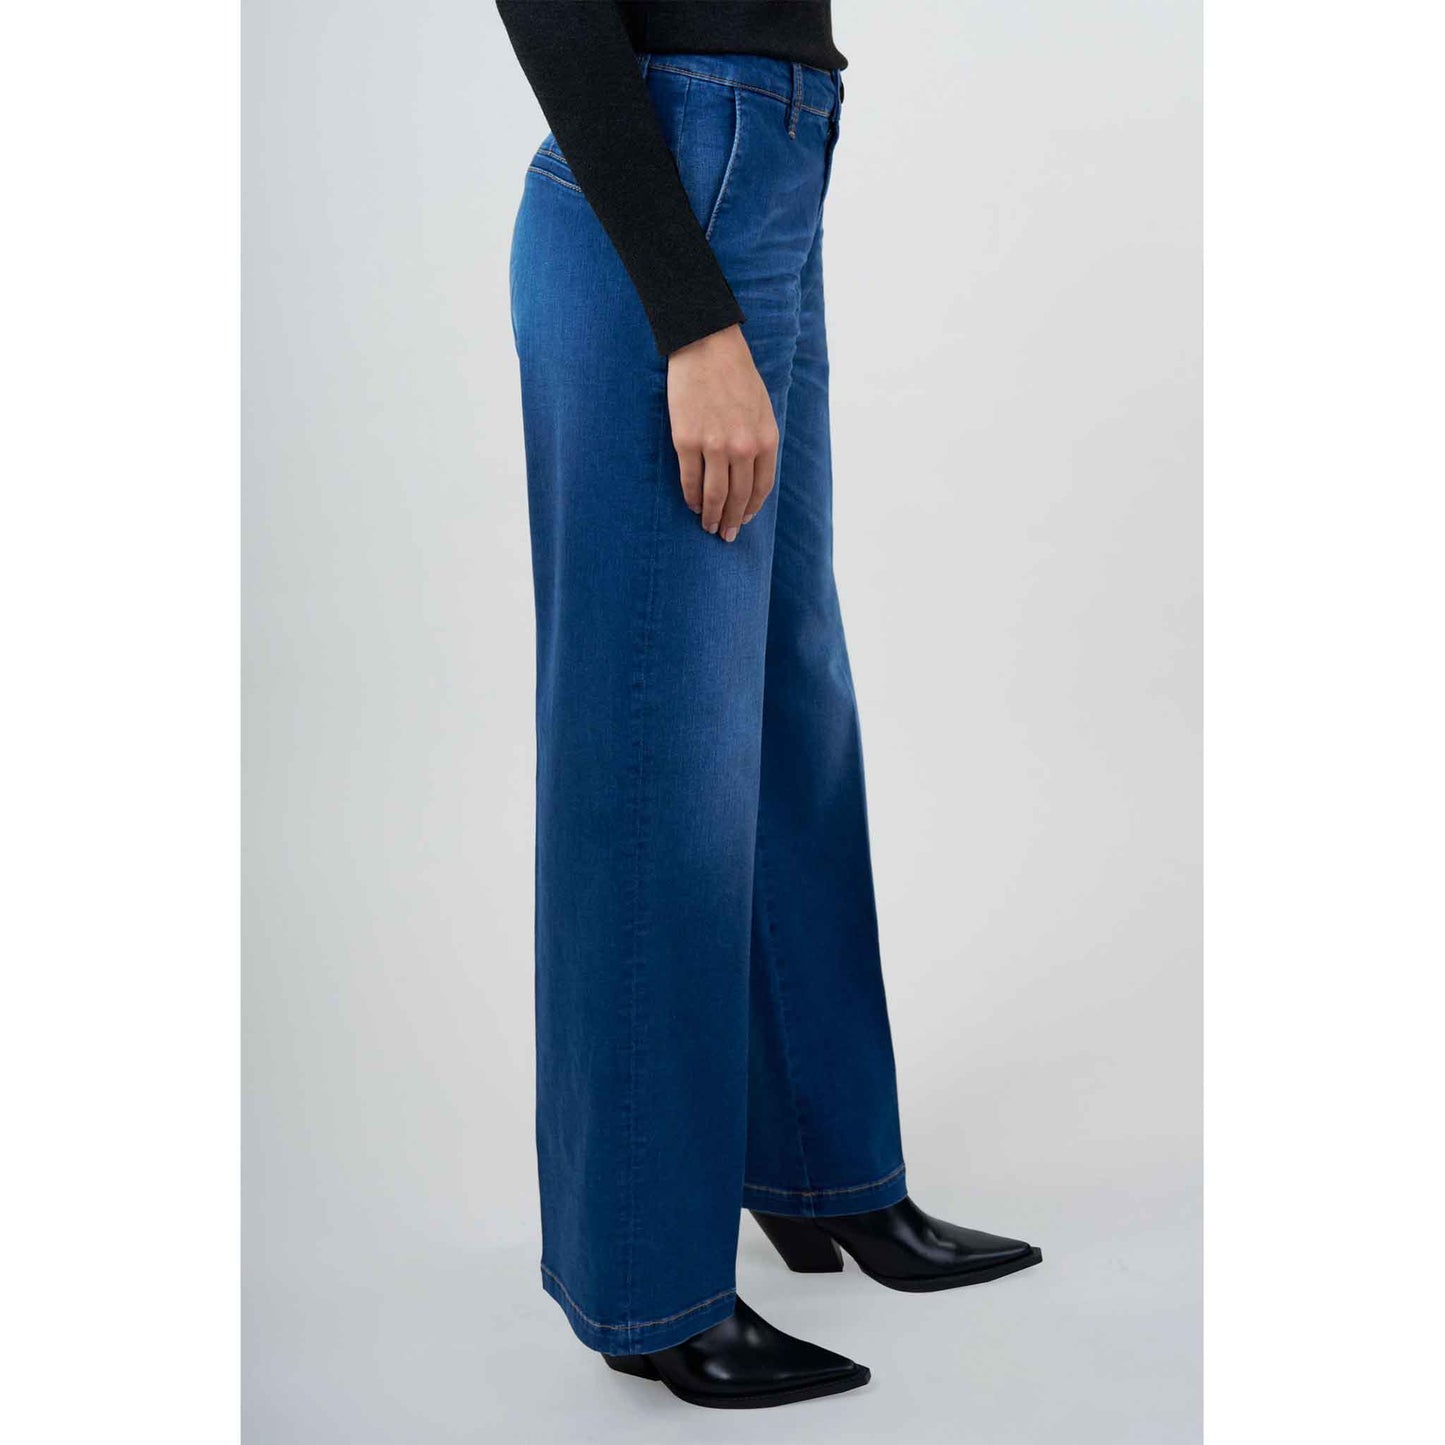 fashion tall woman bluefire jeans marlene pure blue